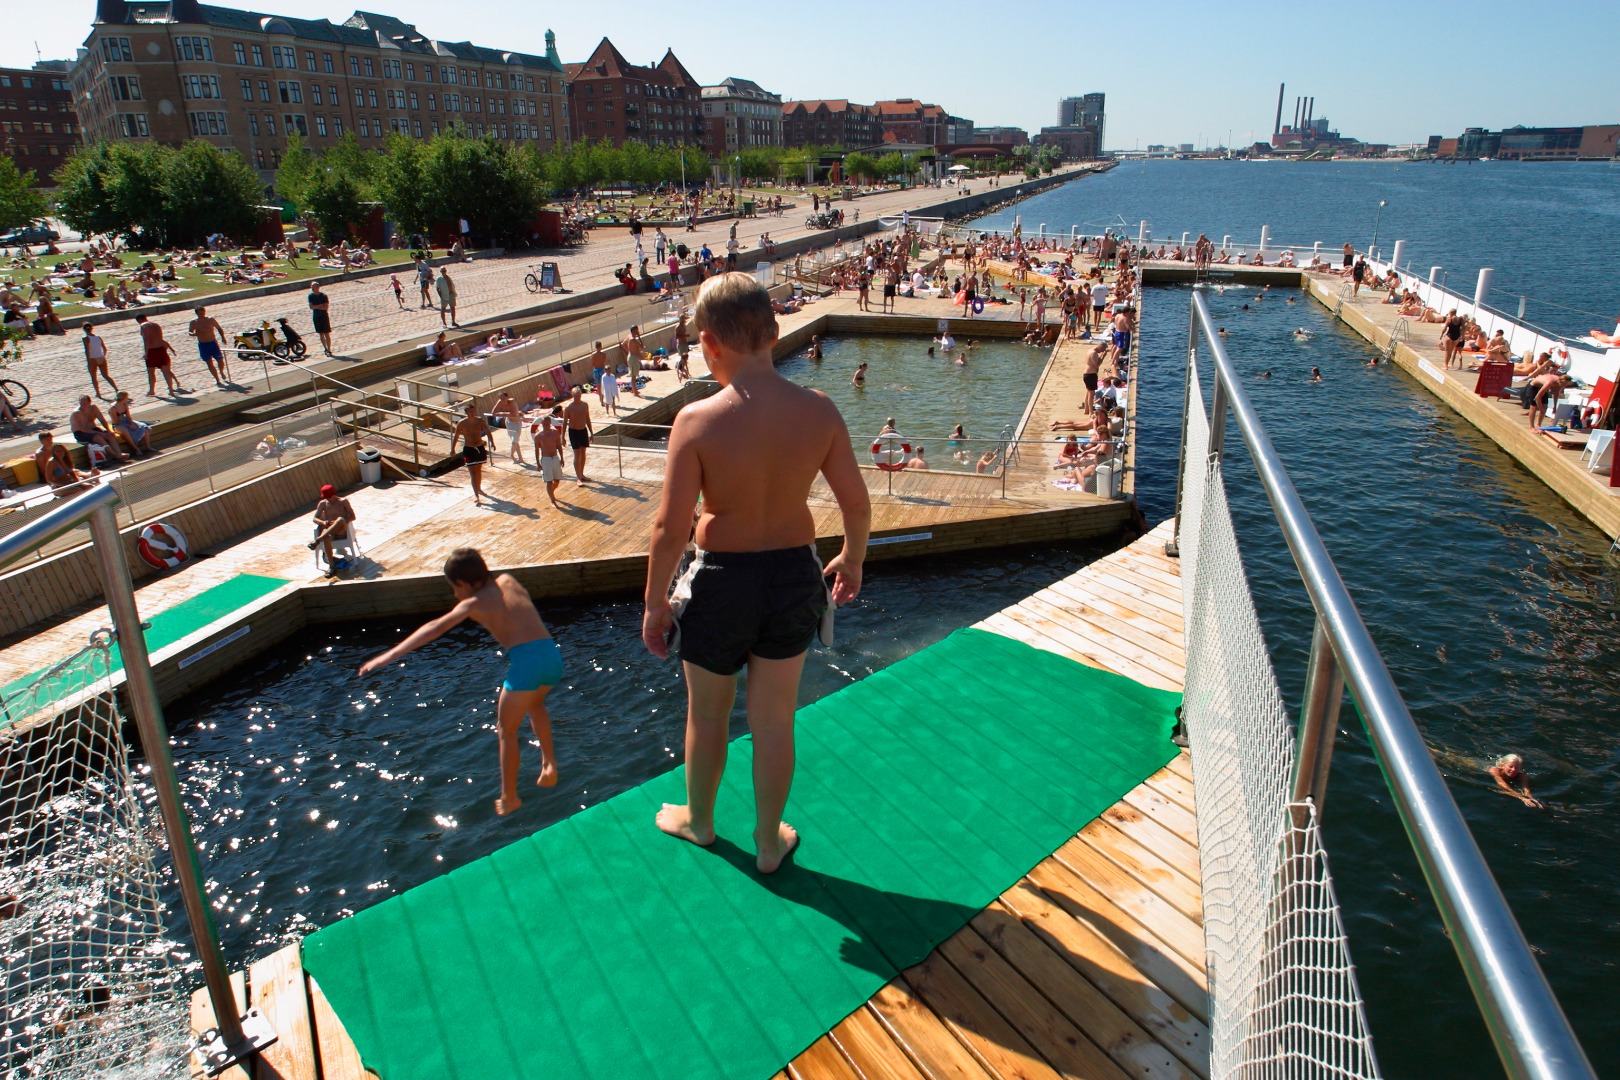 2003 – Havnebadet på Islands Brygge i København: Det blev testet at etablere et ”test-bad” midt i den engang forurenede havn. Det blev en bragende succes, og man lavede et fast havnebad ved Fisketorvet. (Foto: Stig Nørhald)